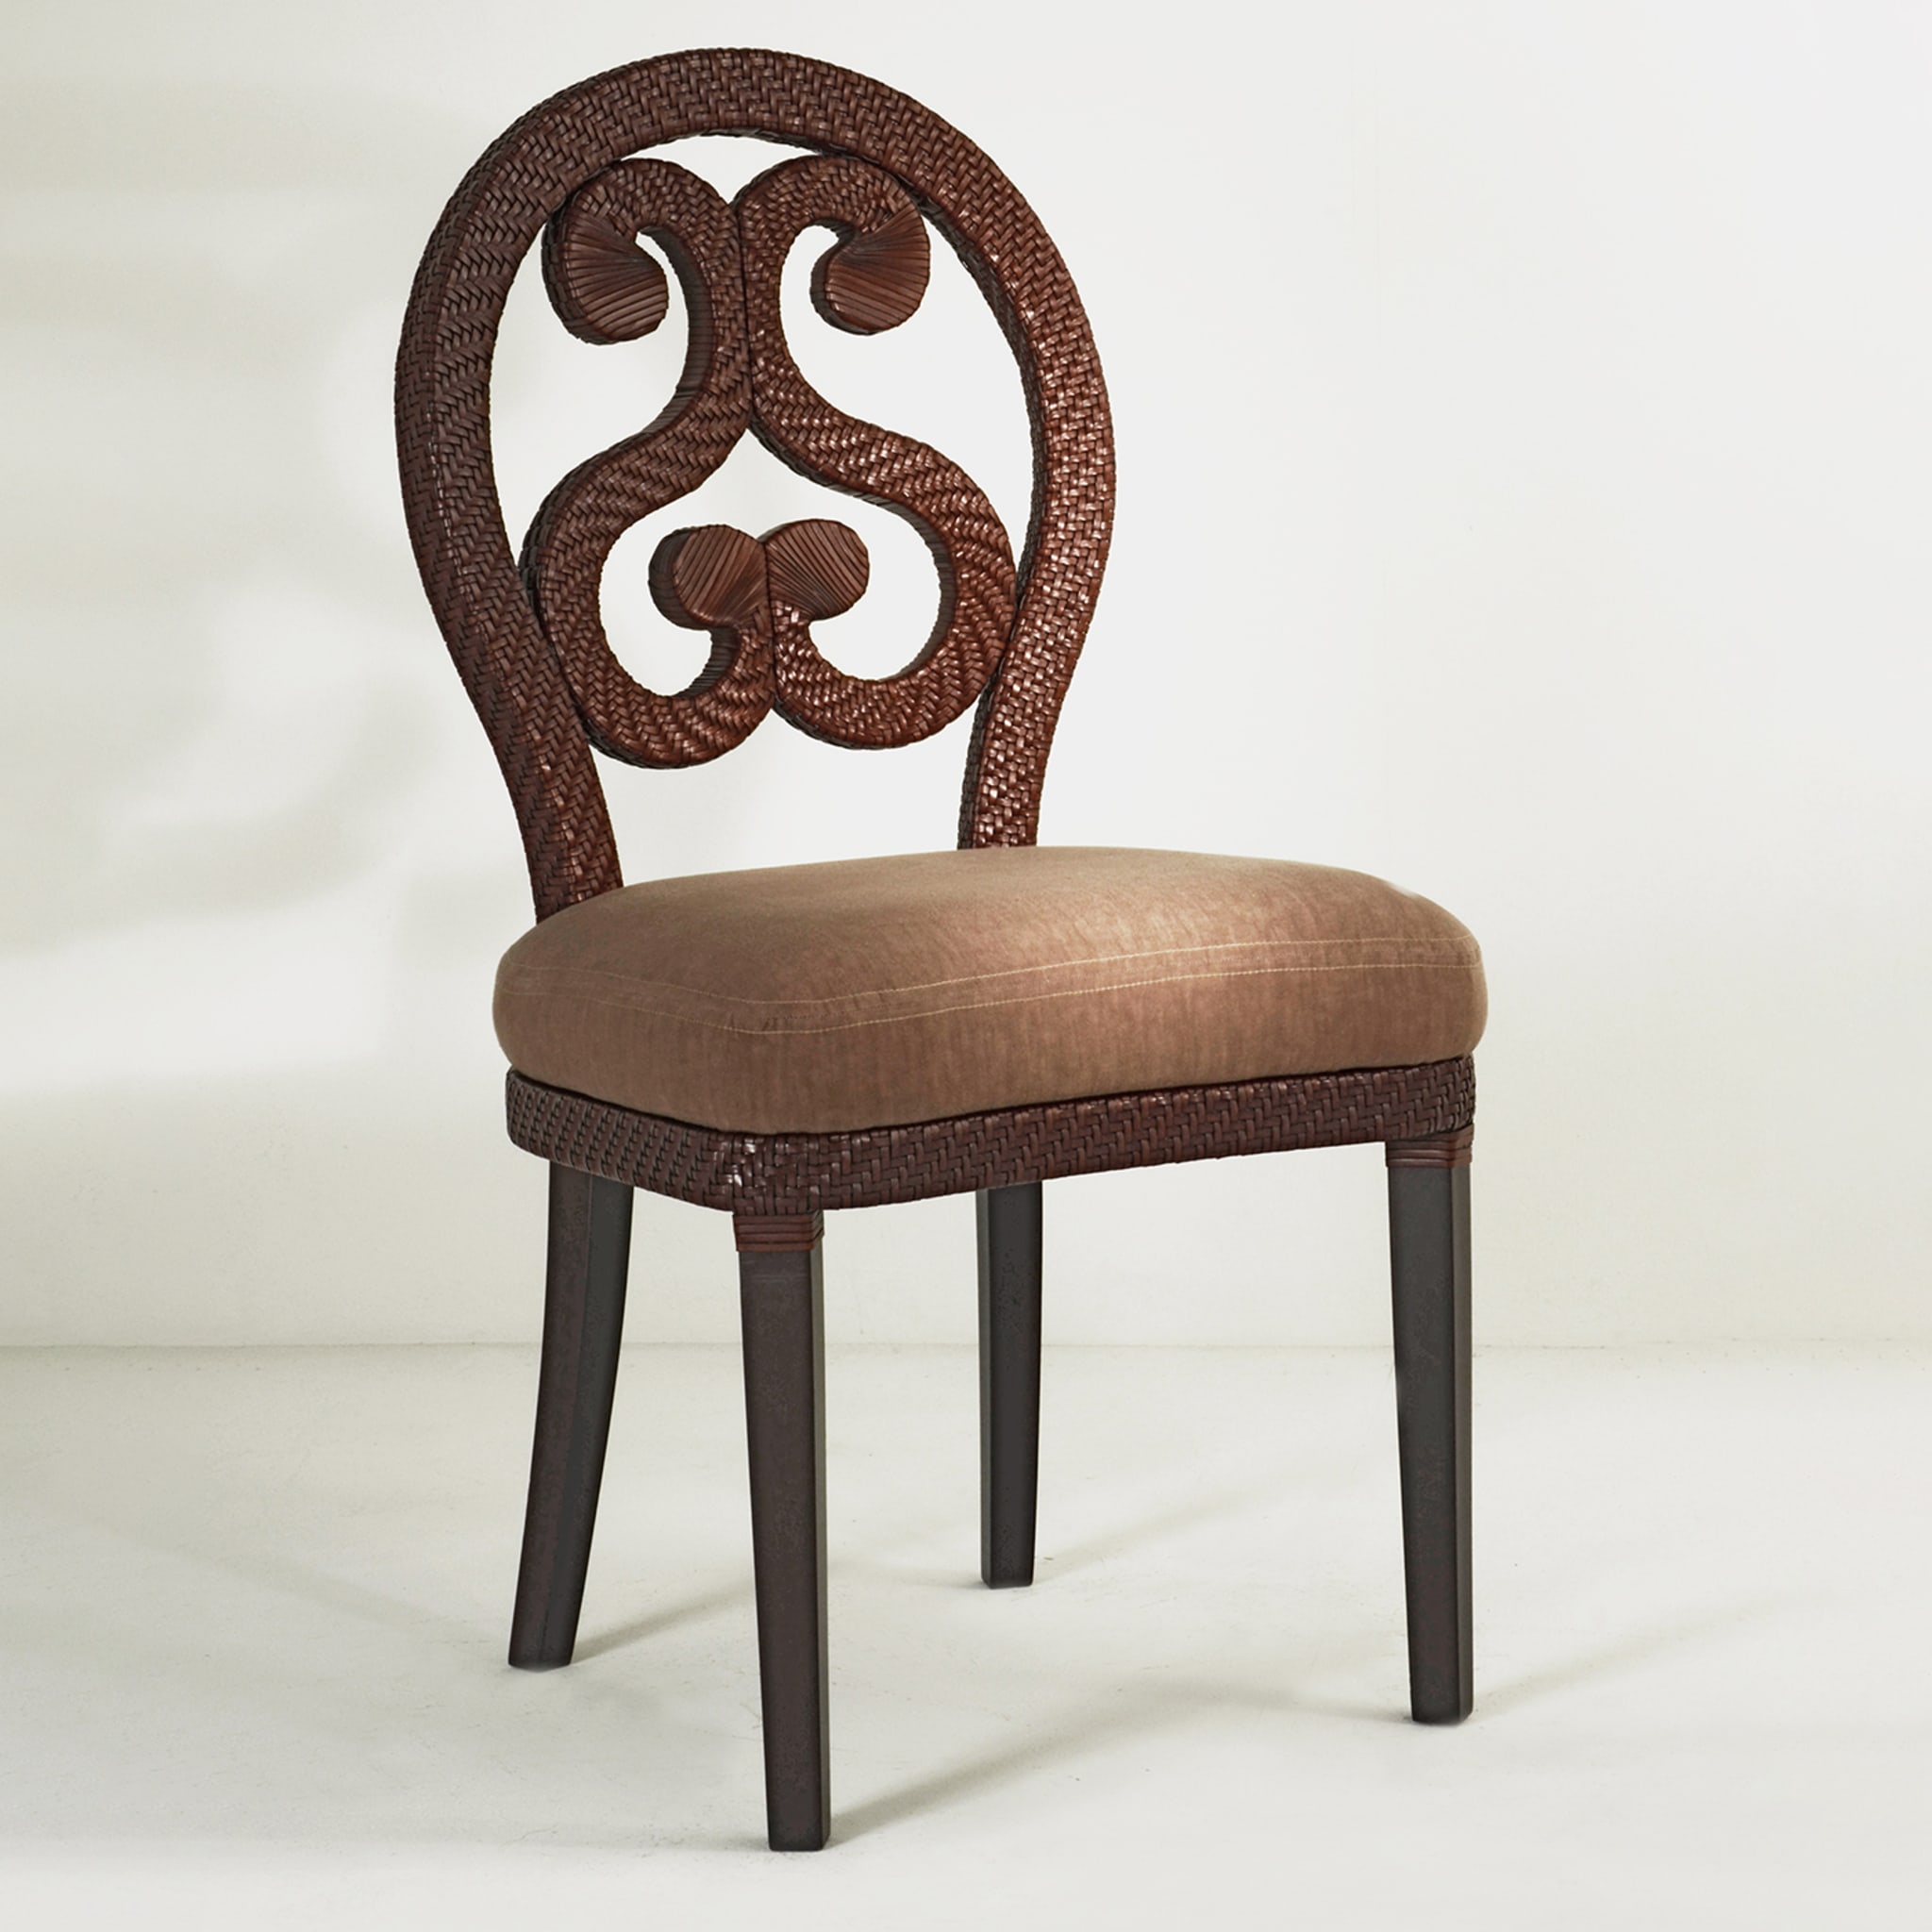 Home Chair By Patrizia Garganti - Alternative view 3